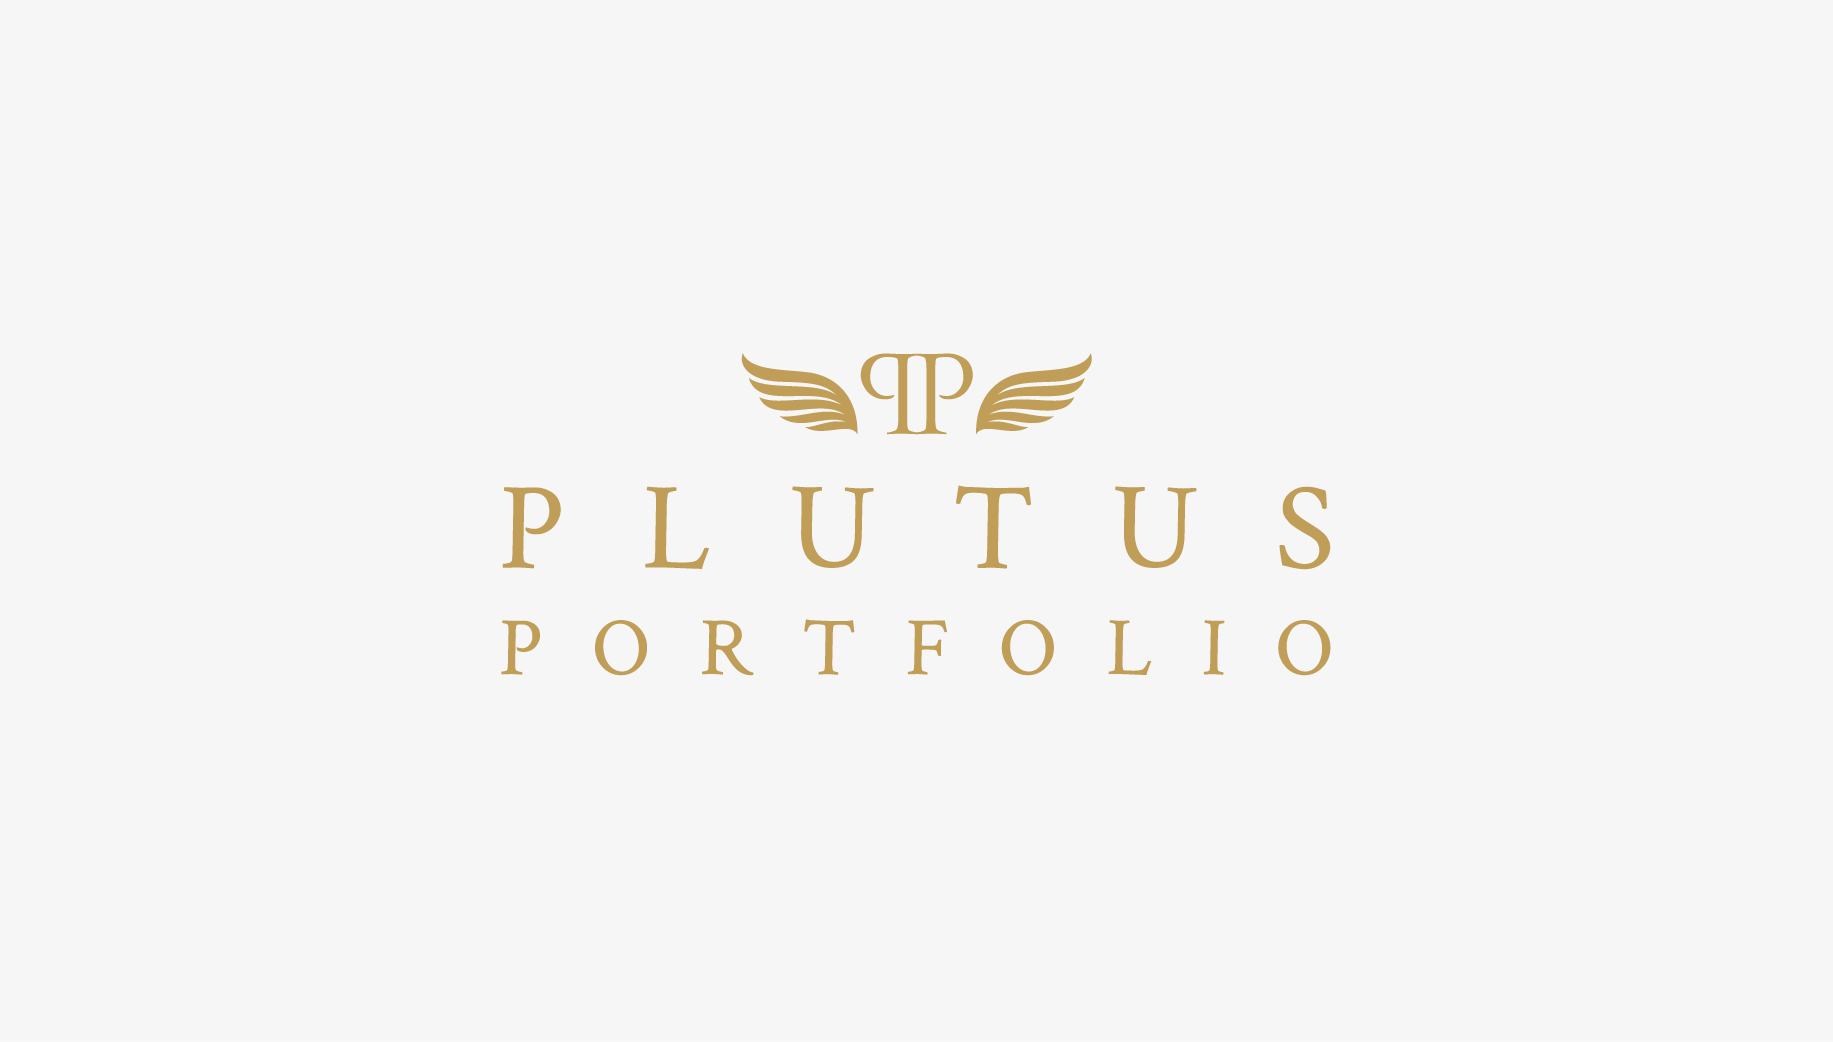 Plutus Portfolio logo